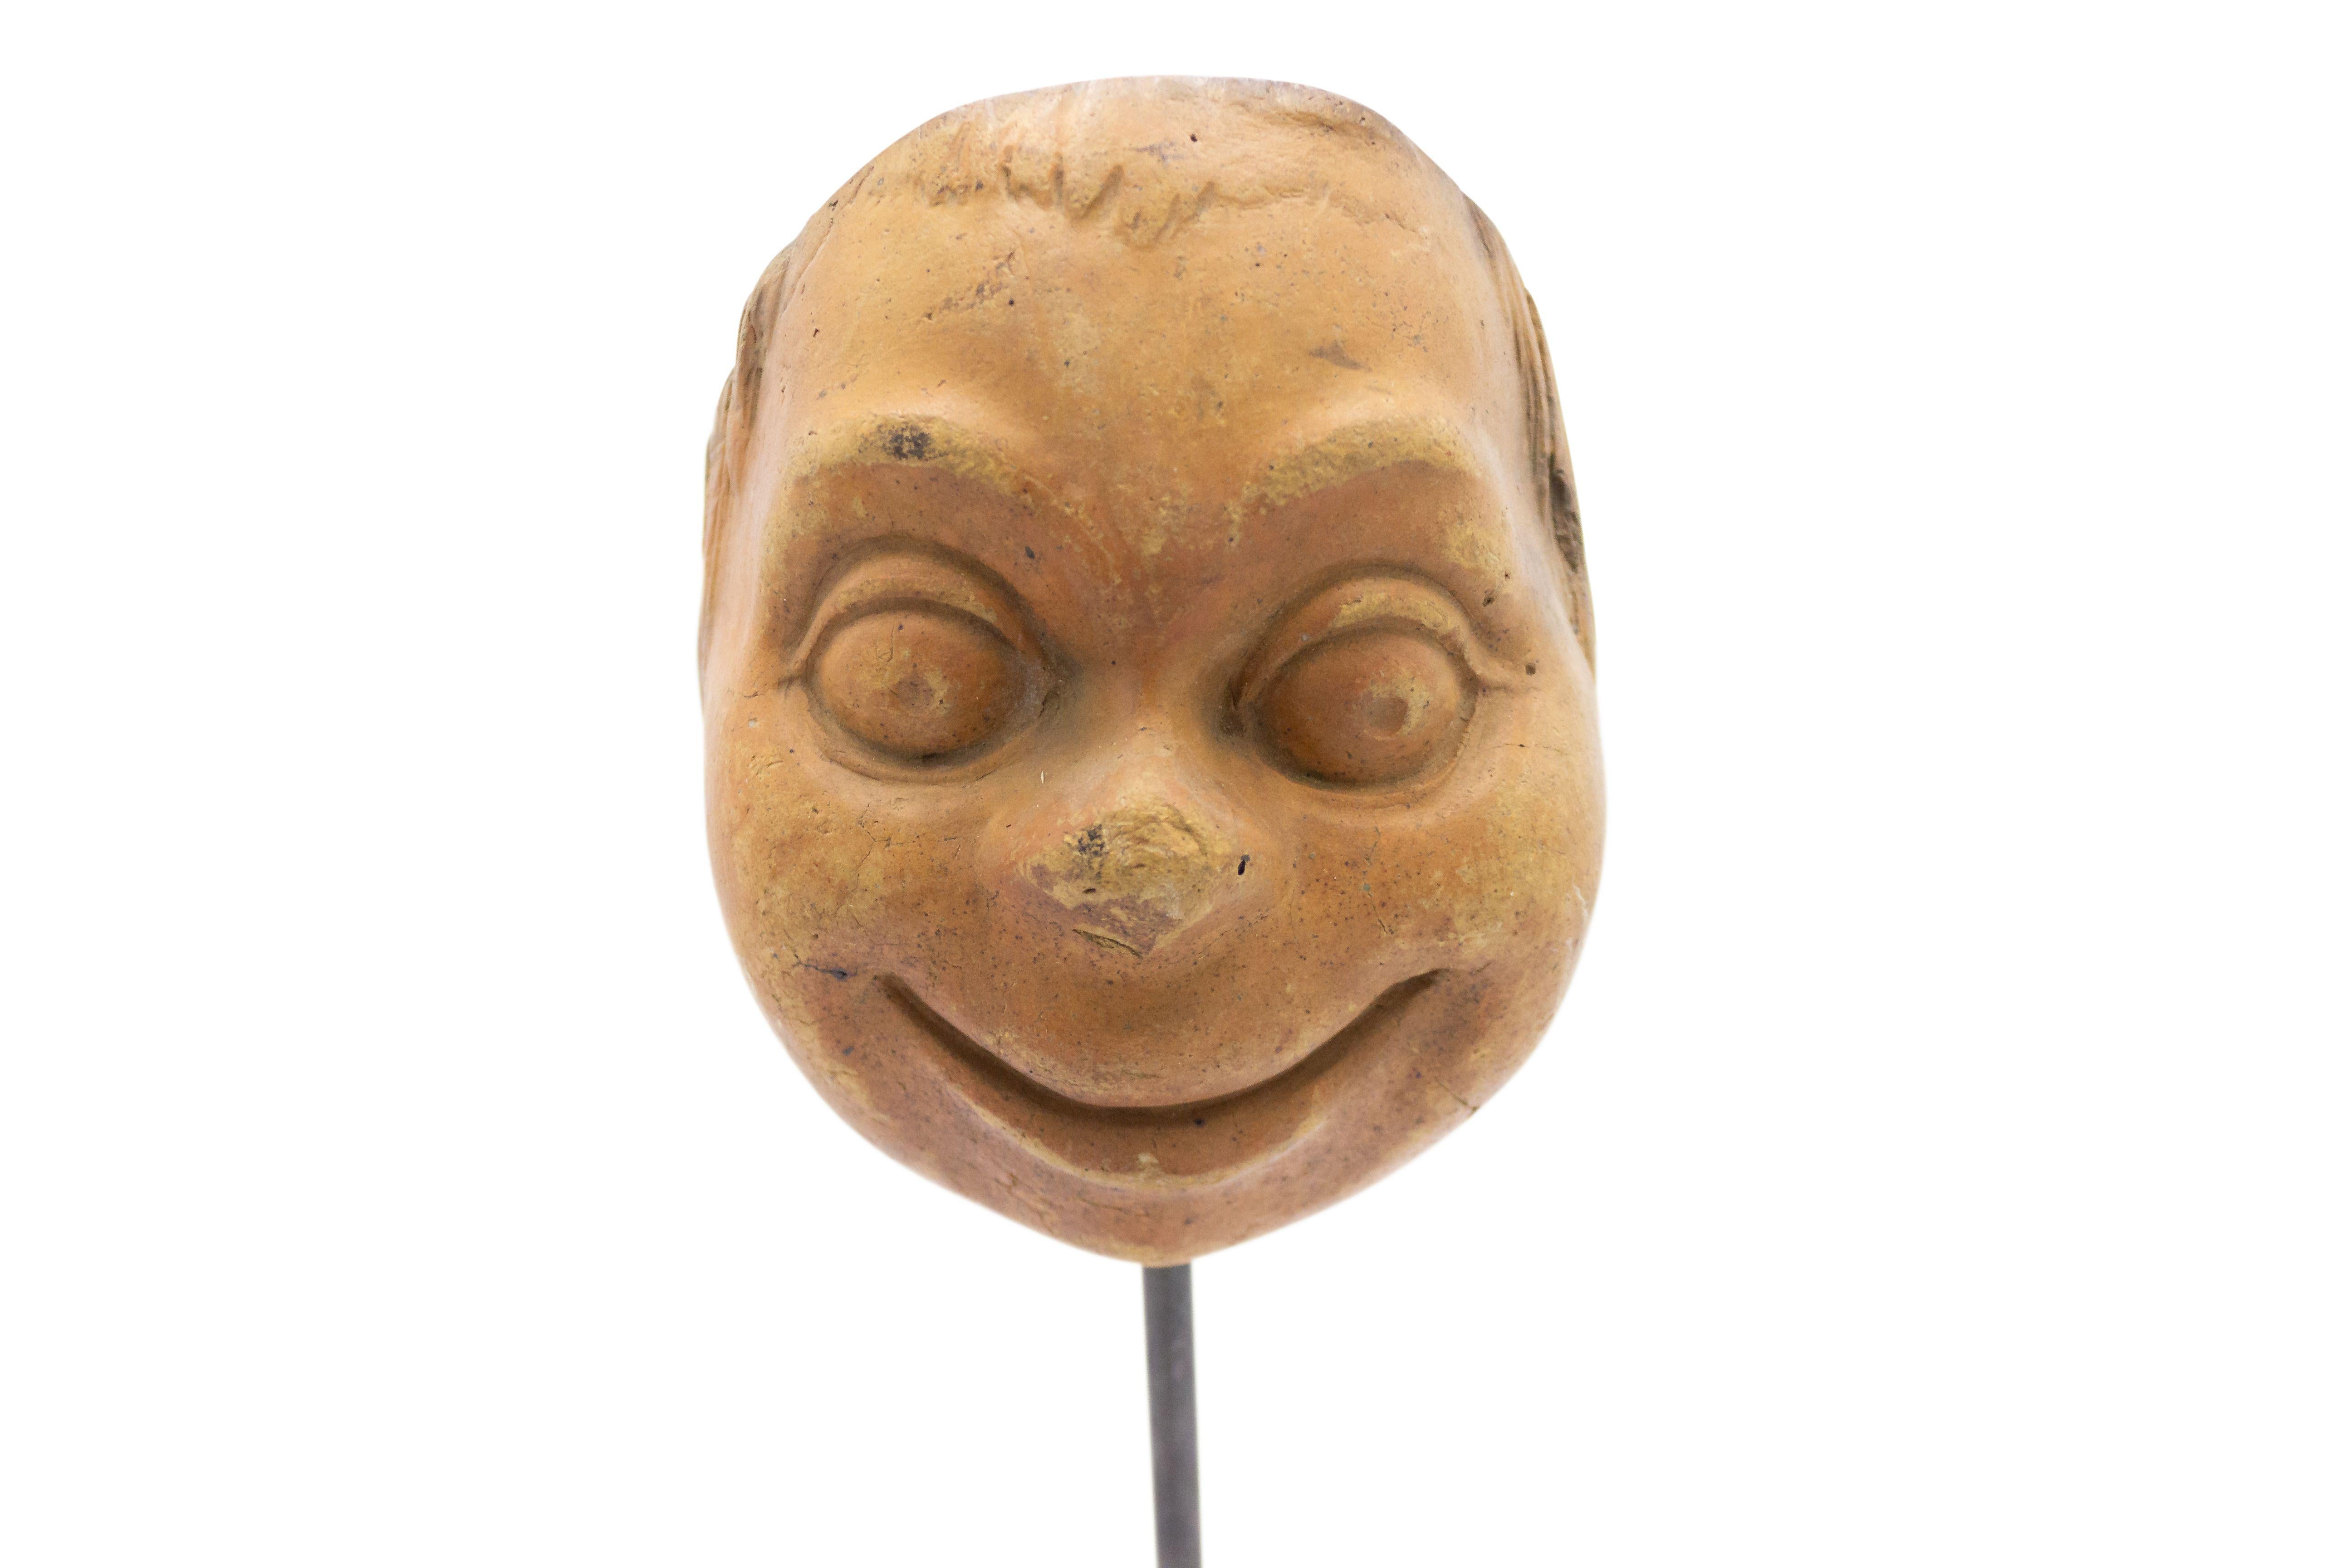 Kontinentaldeutsche (spätes 19. Jh.) Terrakotta-Maskenform eines lächelnden, grotesken Gesichts mit Kulleraugen auf einem quadratischen schwarzen Marmorsockel (Teil einer Sammlung).
 